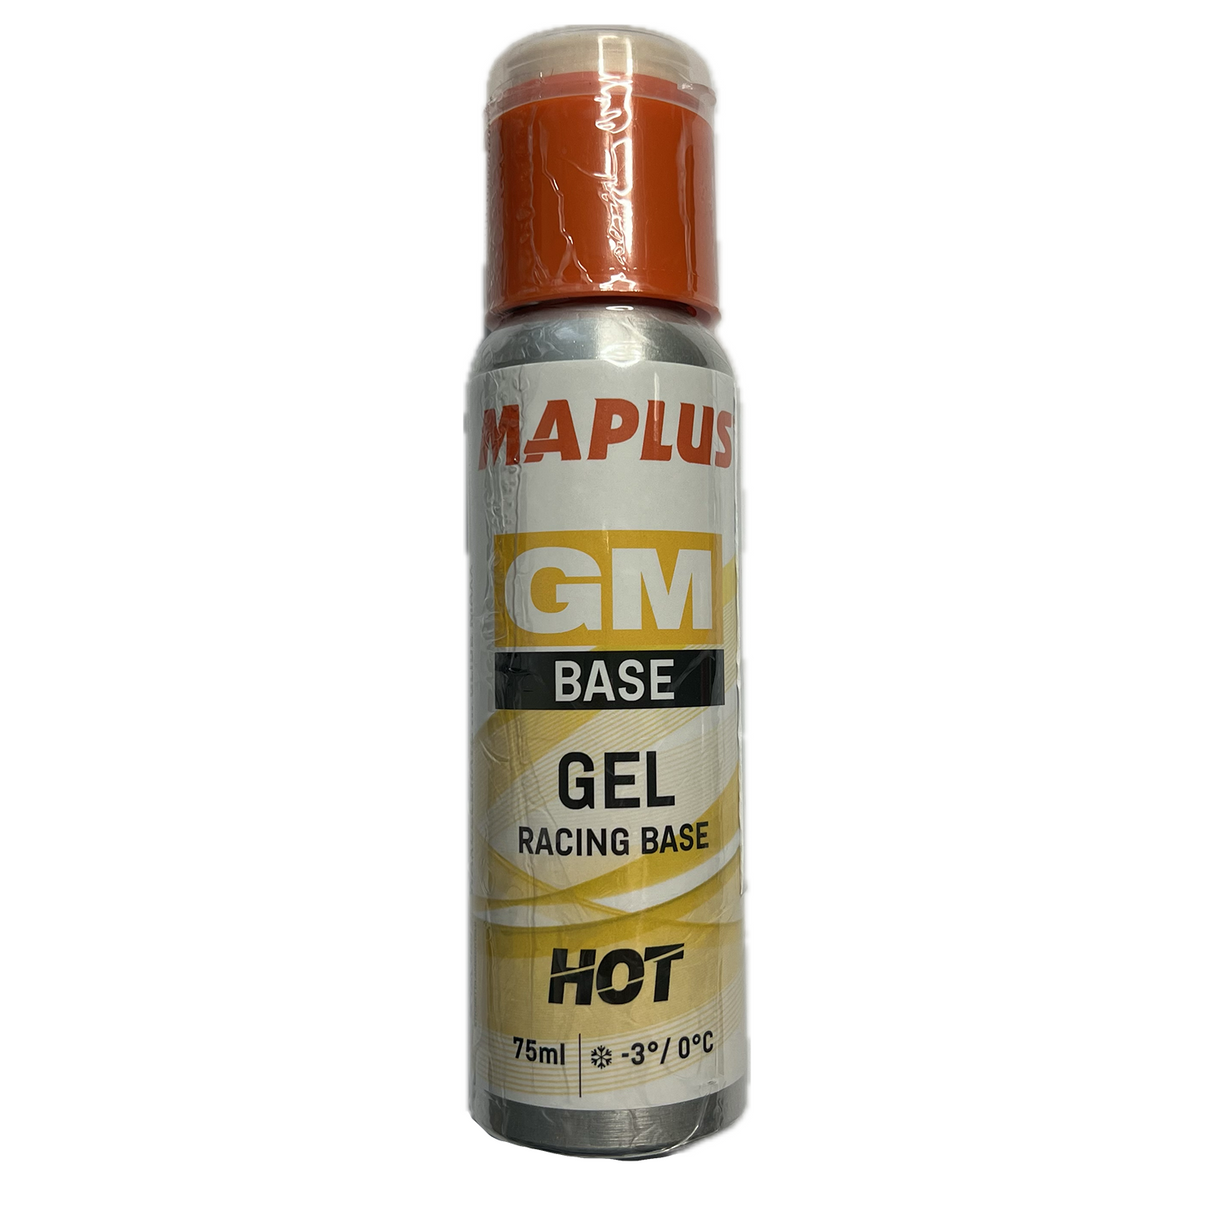 Maplus GM Base Gel Hot 75ml